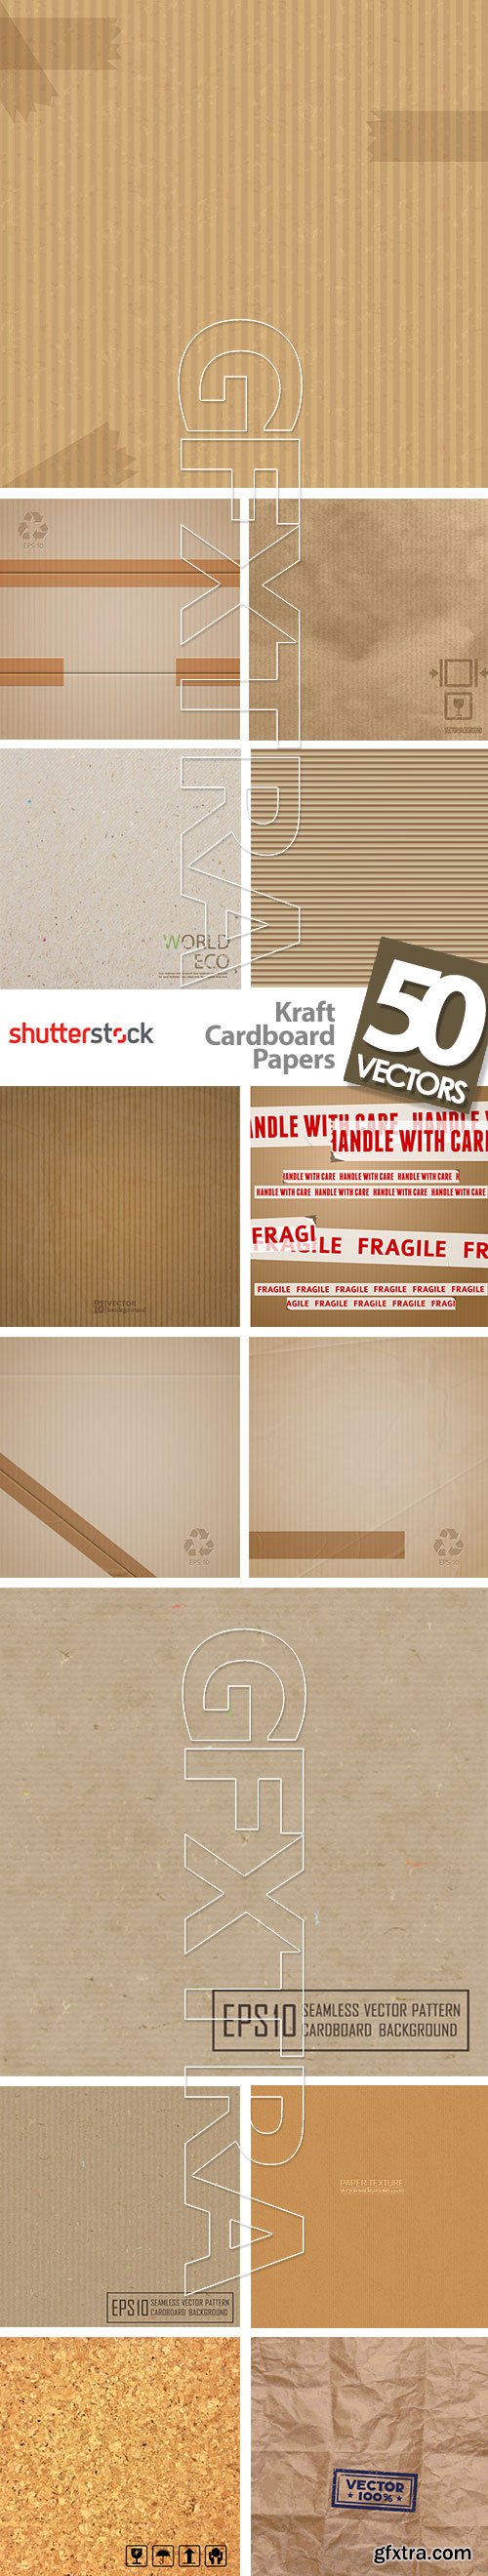 Kraft Cardboard Papers 50xEPS